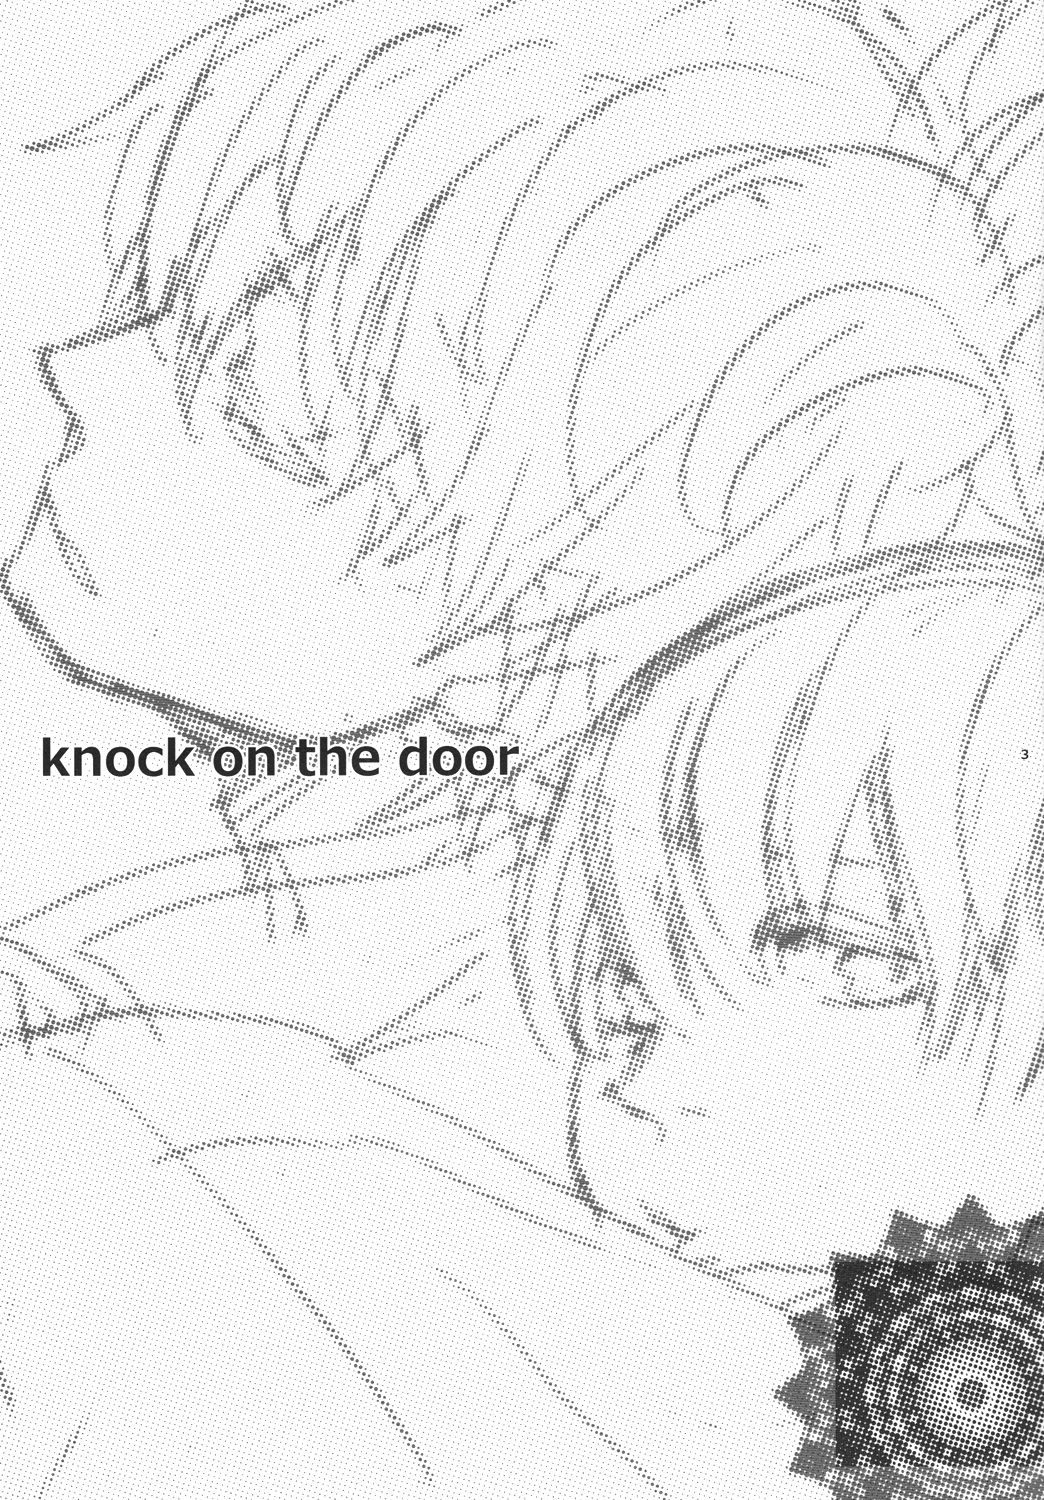 (HaruCC19) [hBa (Kanta)] knock on the door (Gintama) (HARUCC19) [hBa (kanta)] knock on the door (銀魂)